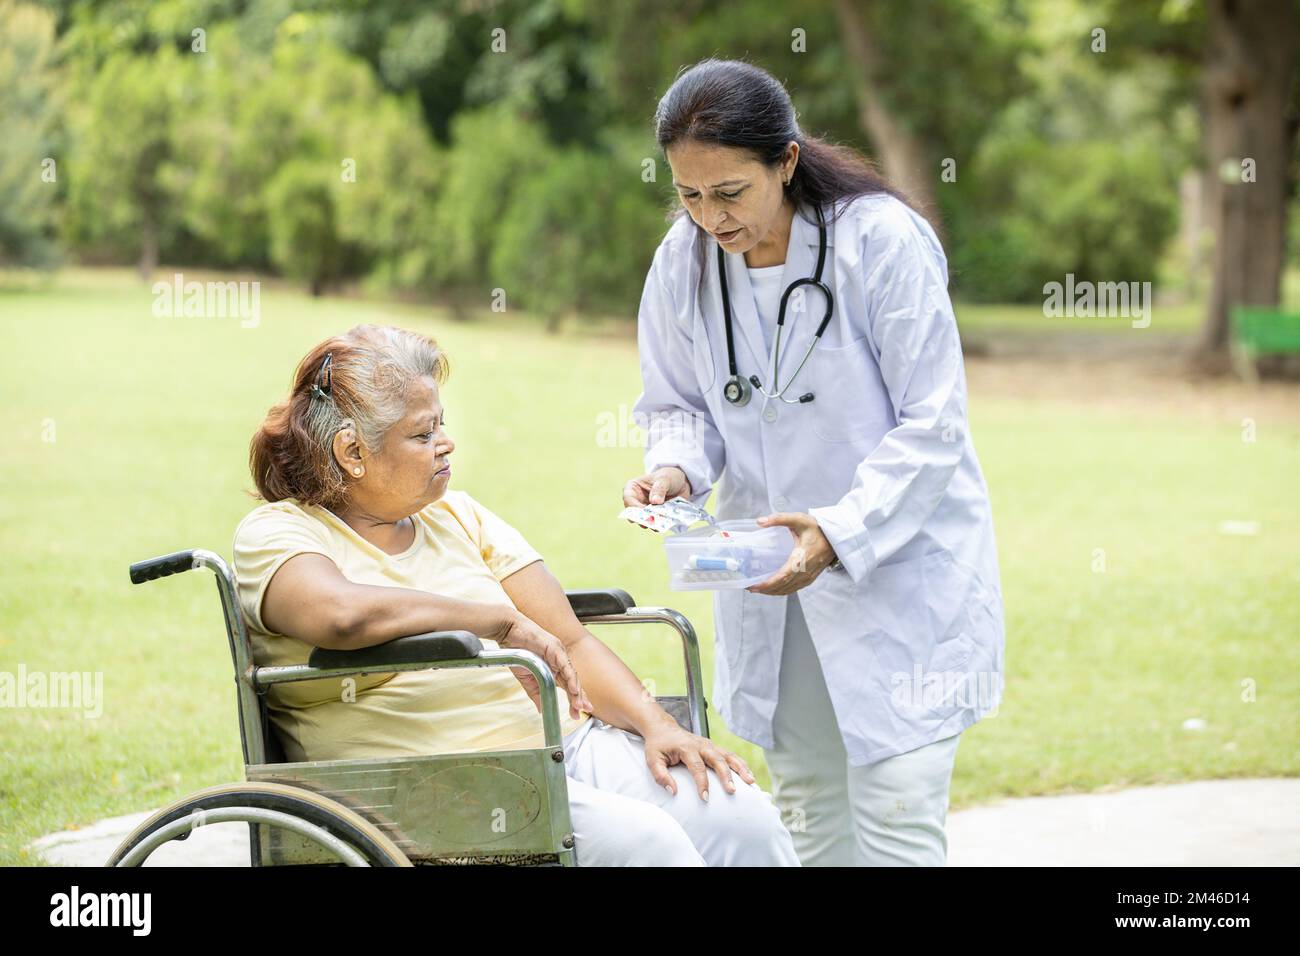 Medico indiano o infermiera dare medicina a pazienti anziani in una sedia a rotelle all'aperto nel parco. Foto Stock